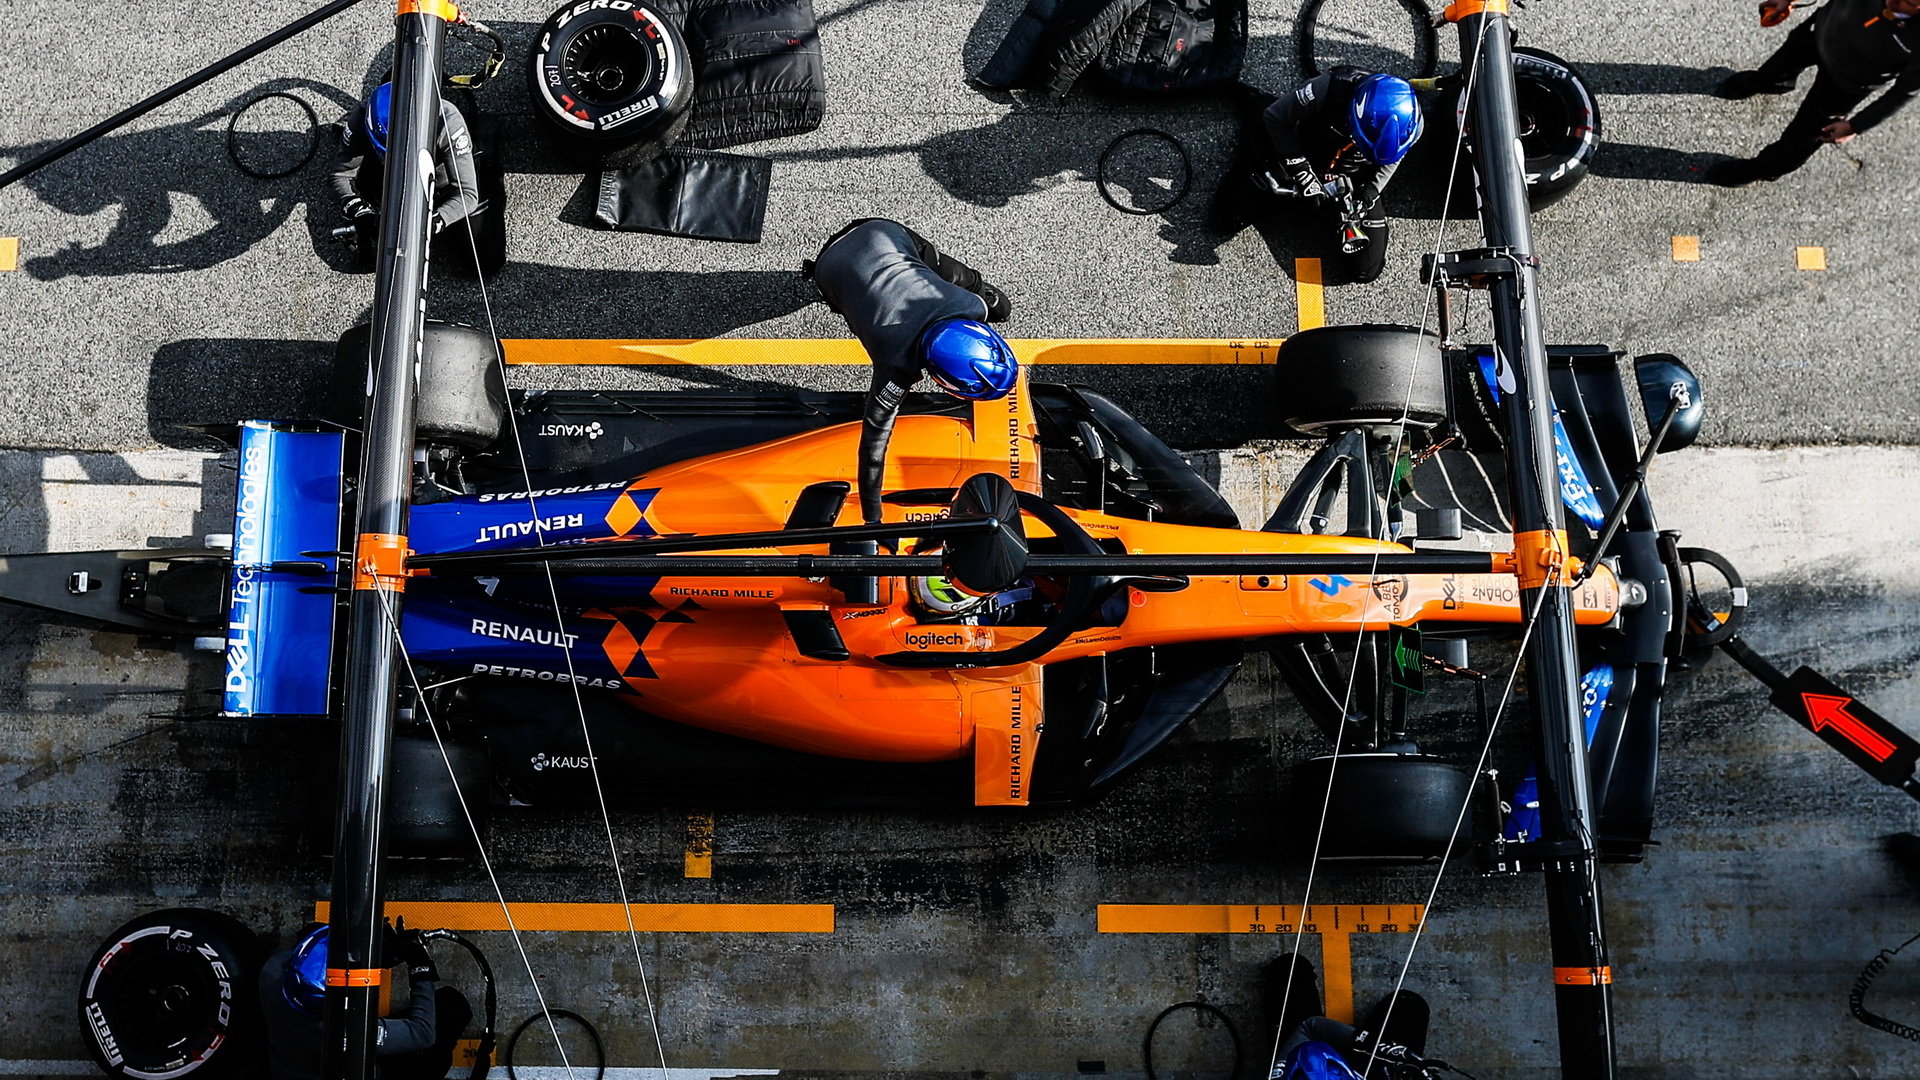 Lando Norris v novém voze McLaren MCL34 - Renault při druhém dni testů v Barceloně